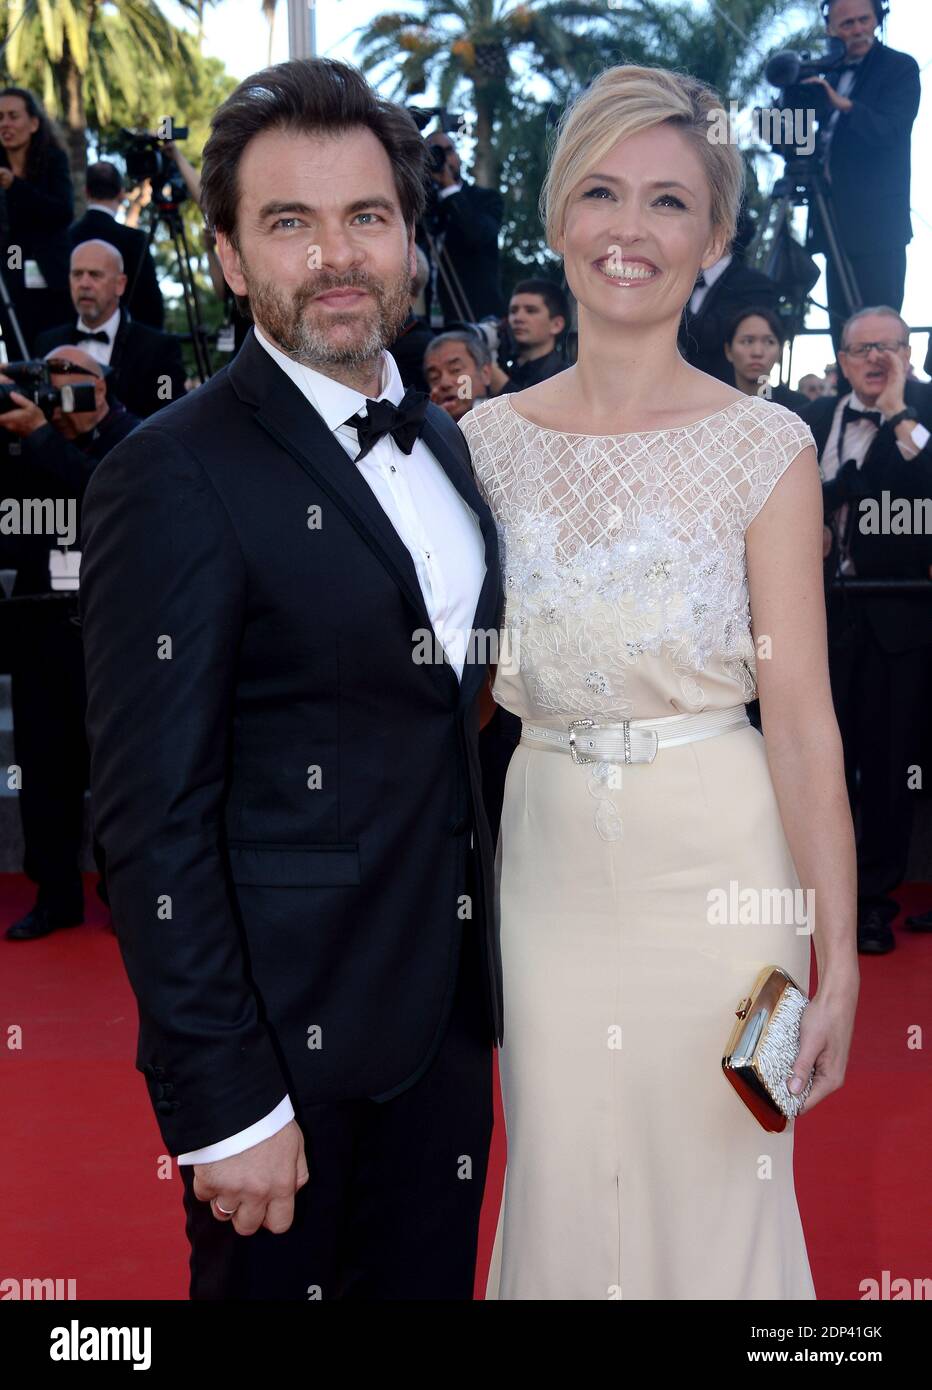 Lilou Fogli und Clovis Cornillac besuchen die Vorführung von "Inside Out" beim 68. Filmfestival von Cannes am 18. Mai 2015 in Cannes, Frankreich. Foto von Lionel Hahn/ABACAPRESS.COM Stockfoto